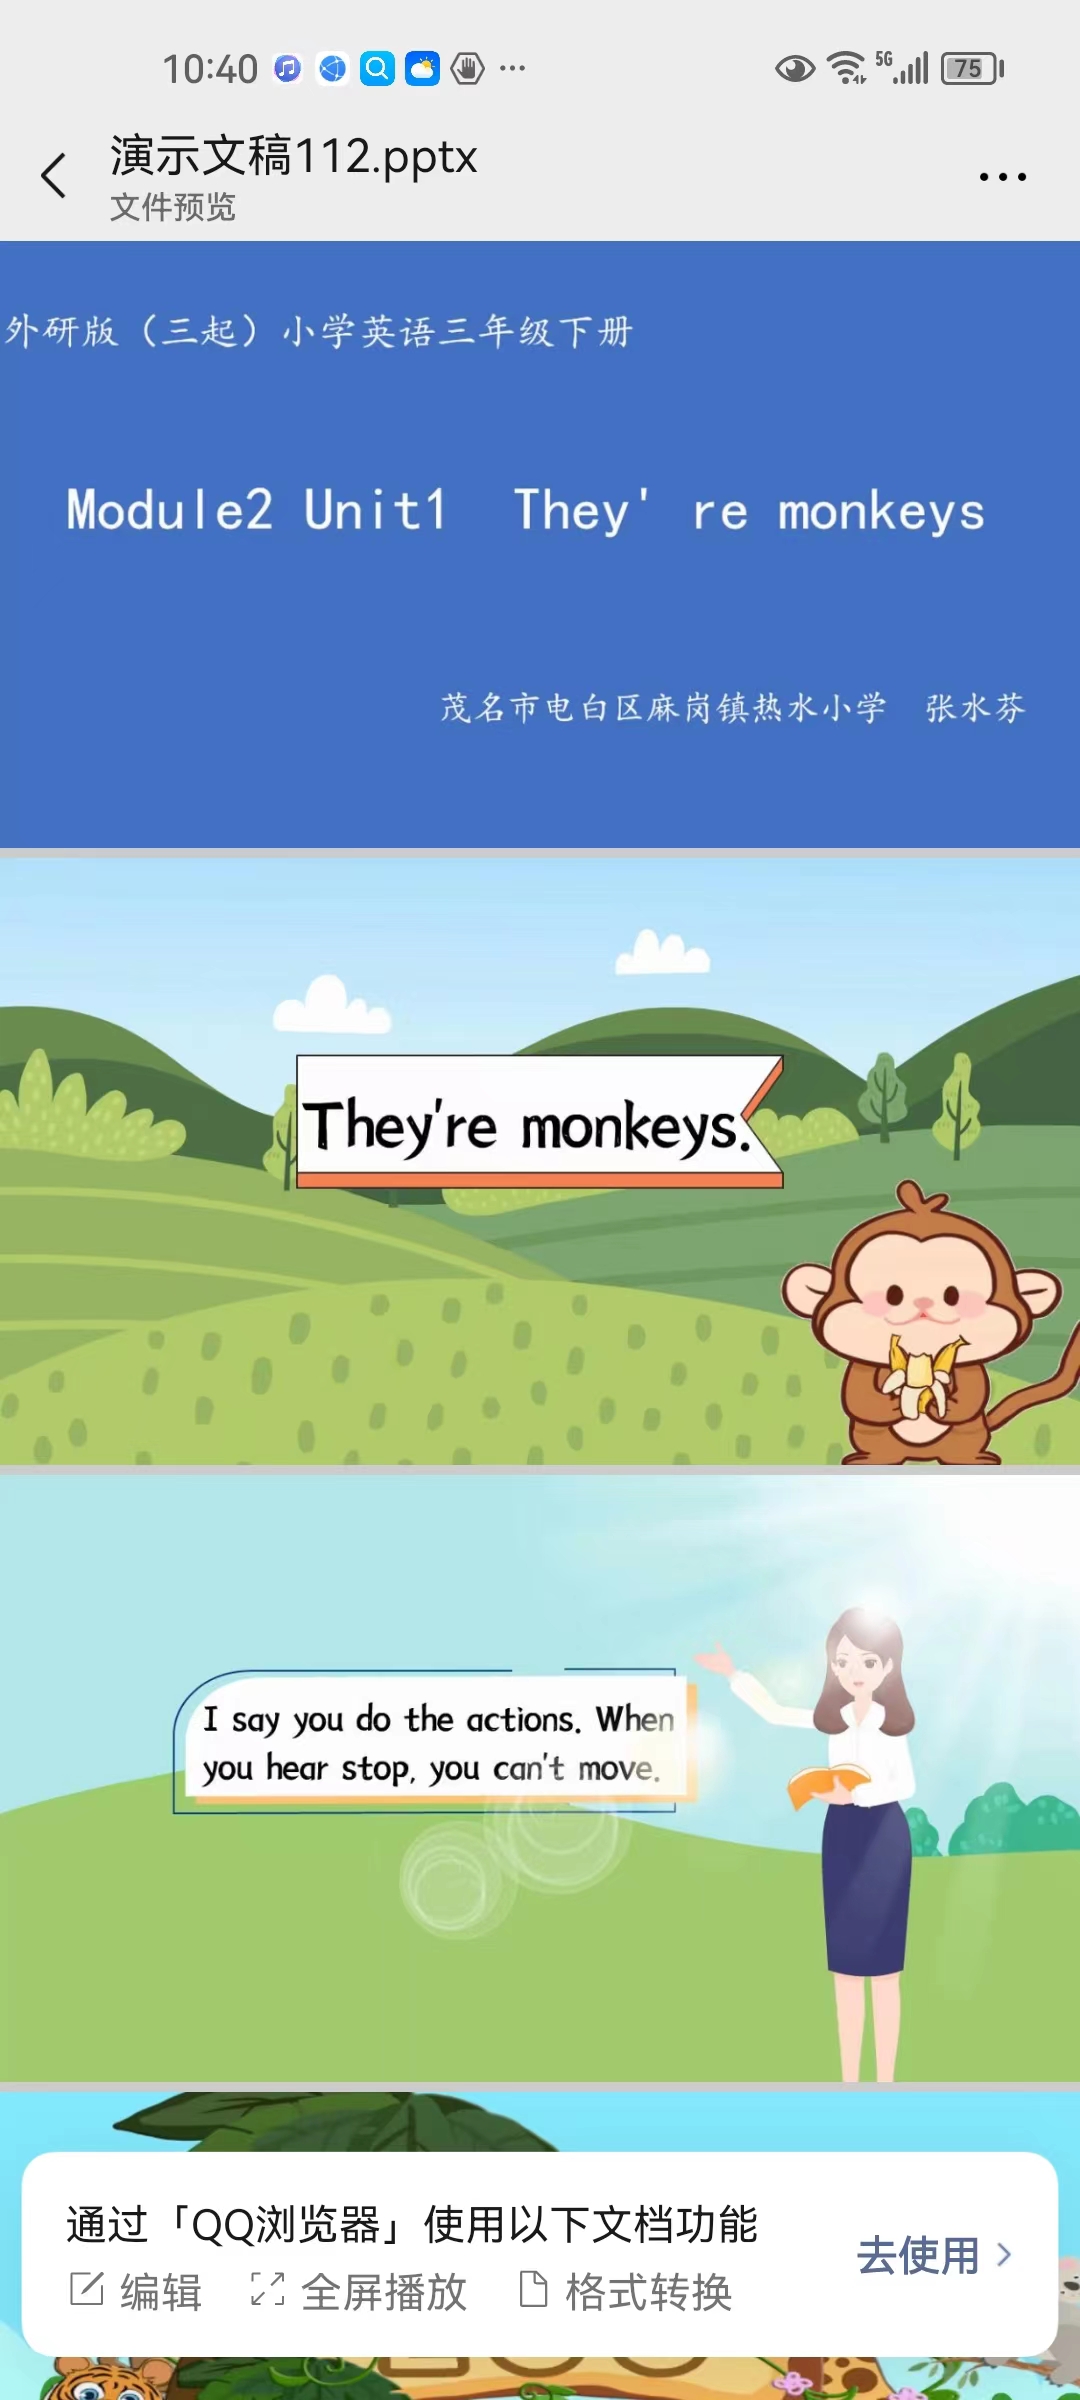 Module2 Unit1 They're monkeys.